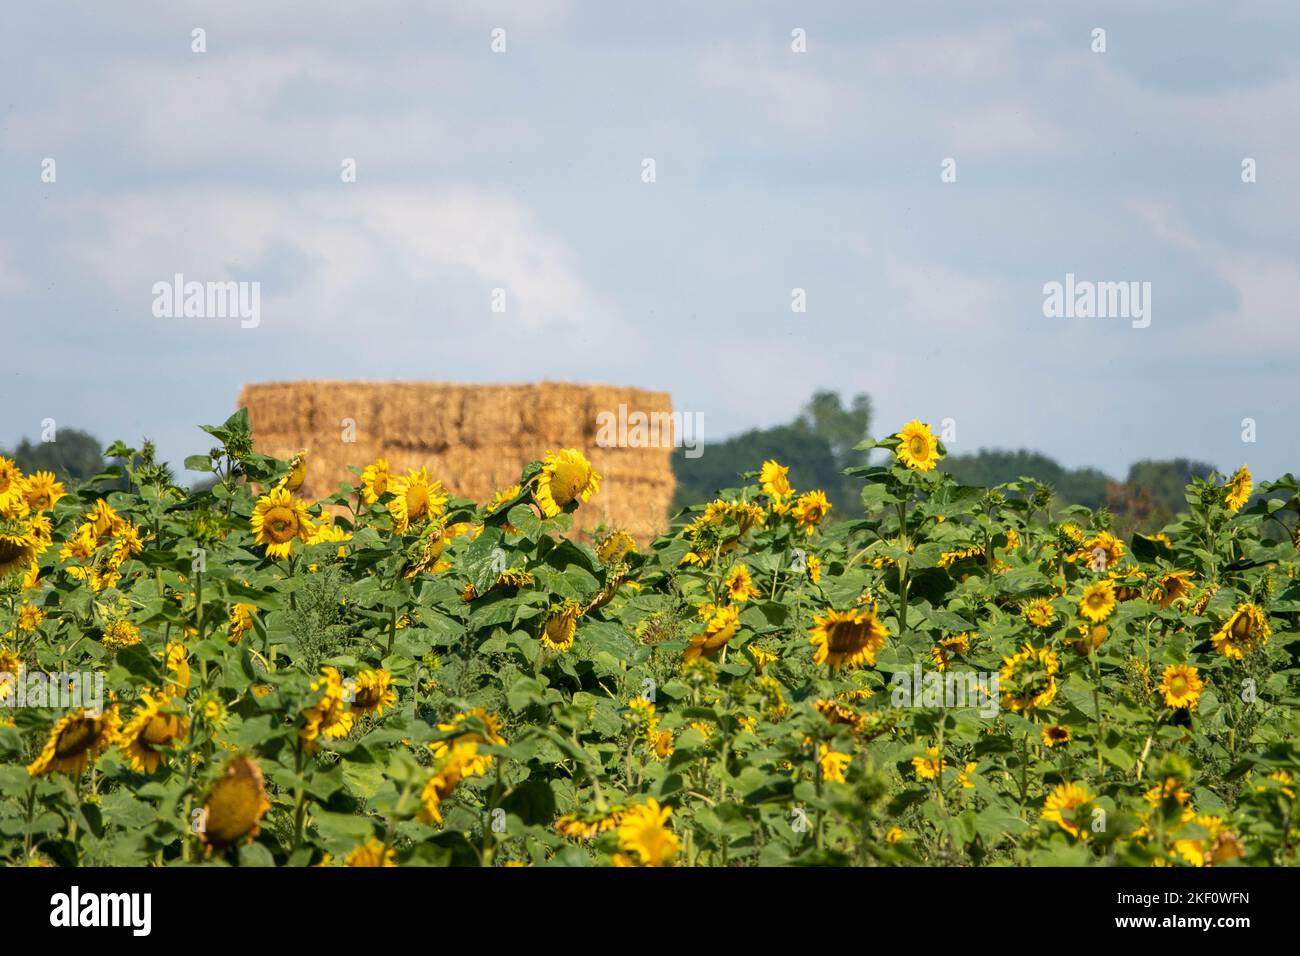 campo de girasoles amarillo brillante con una pila de heno en el fondo Foto de stock